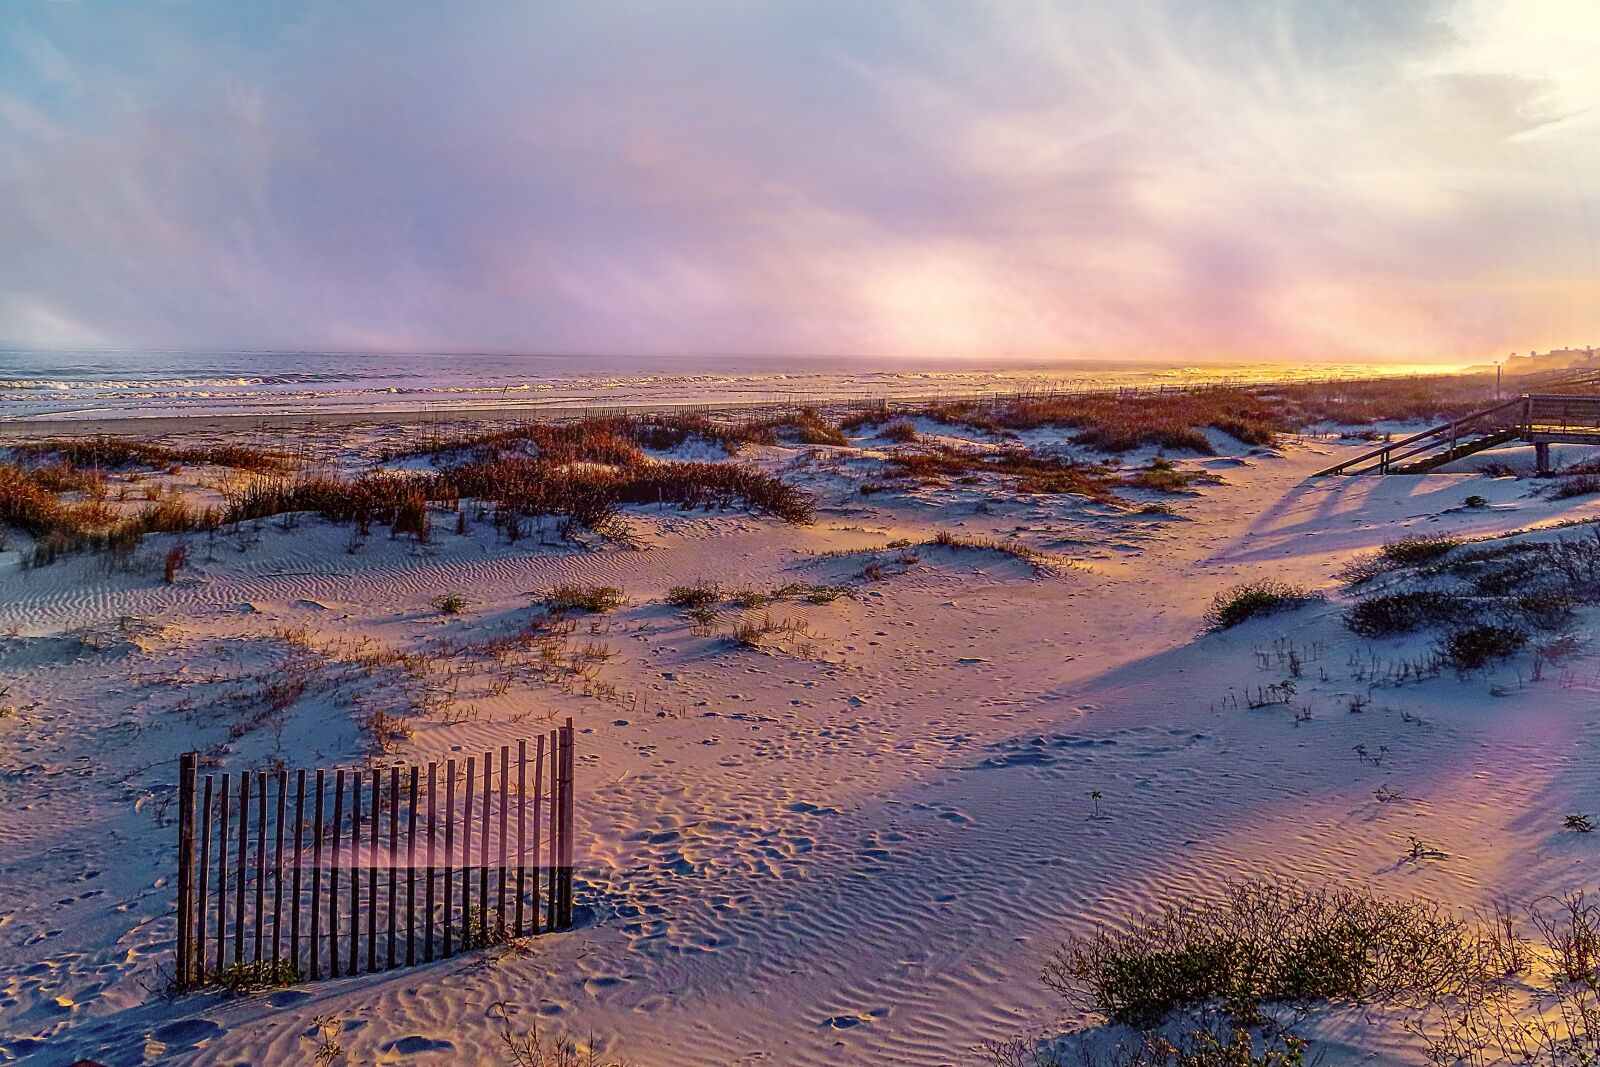 Canon PowerShot SX740 HS sample photo. Landscape, seascape, beach photography